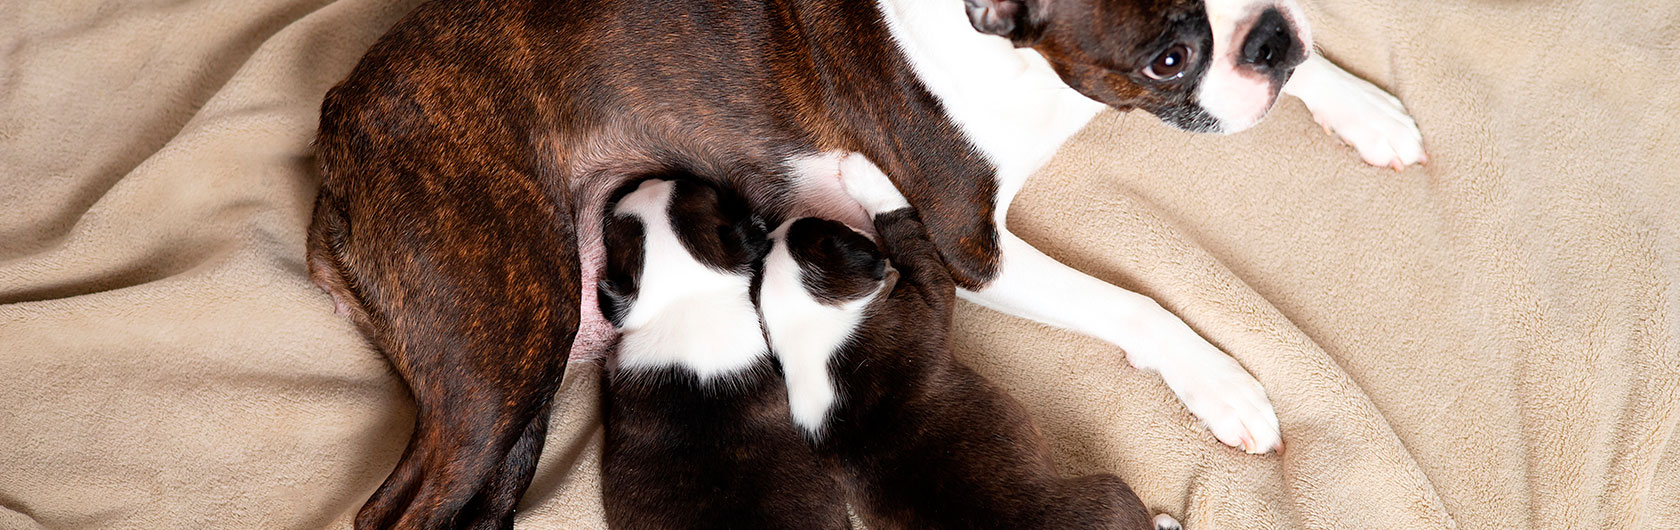 Alimentación de los cachorros: leche materna y comida para perros